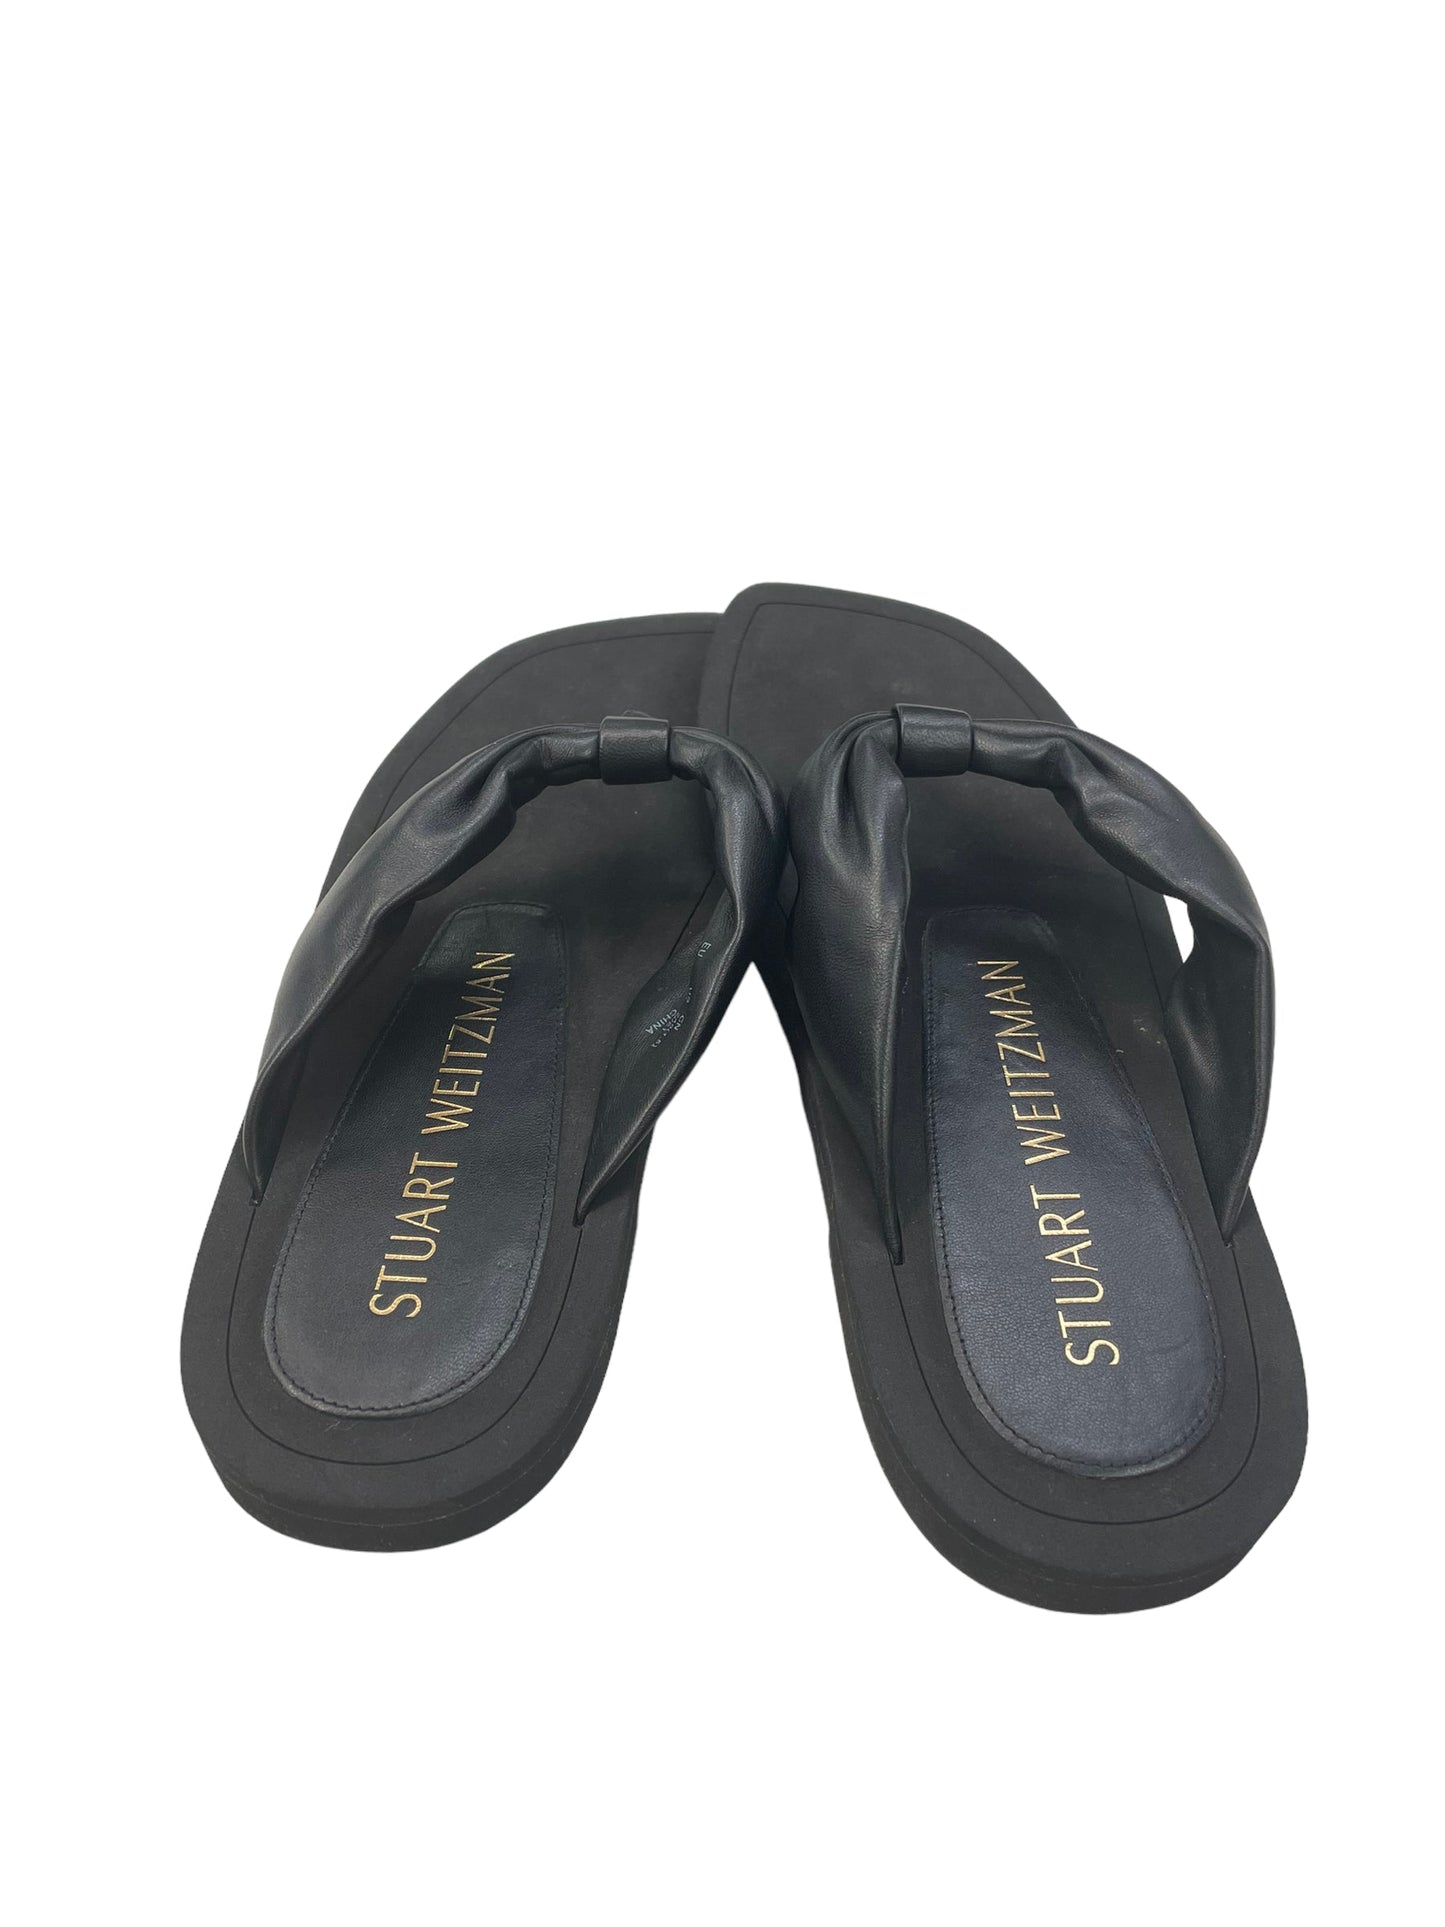 Sandals Designer By Stuart Weitzman  Size: 7